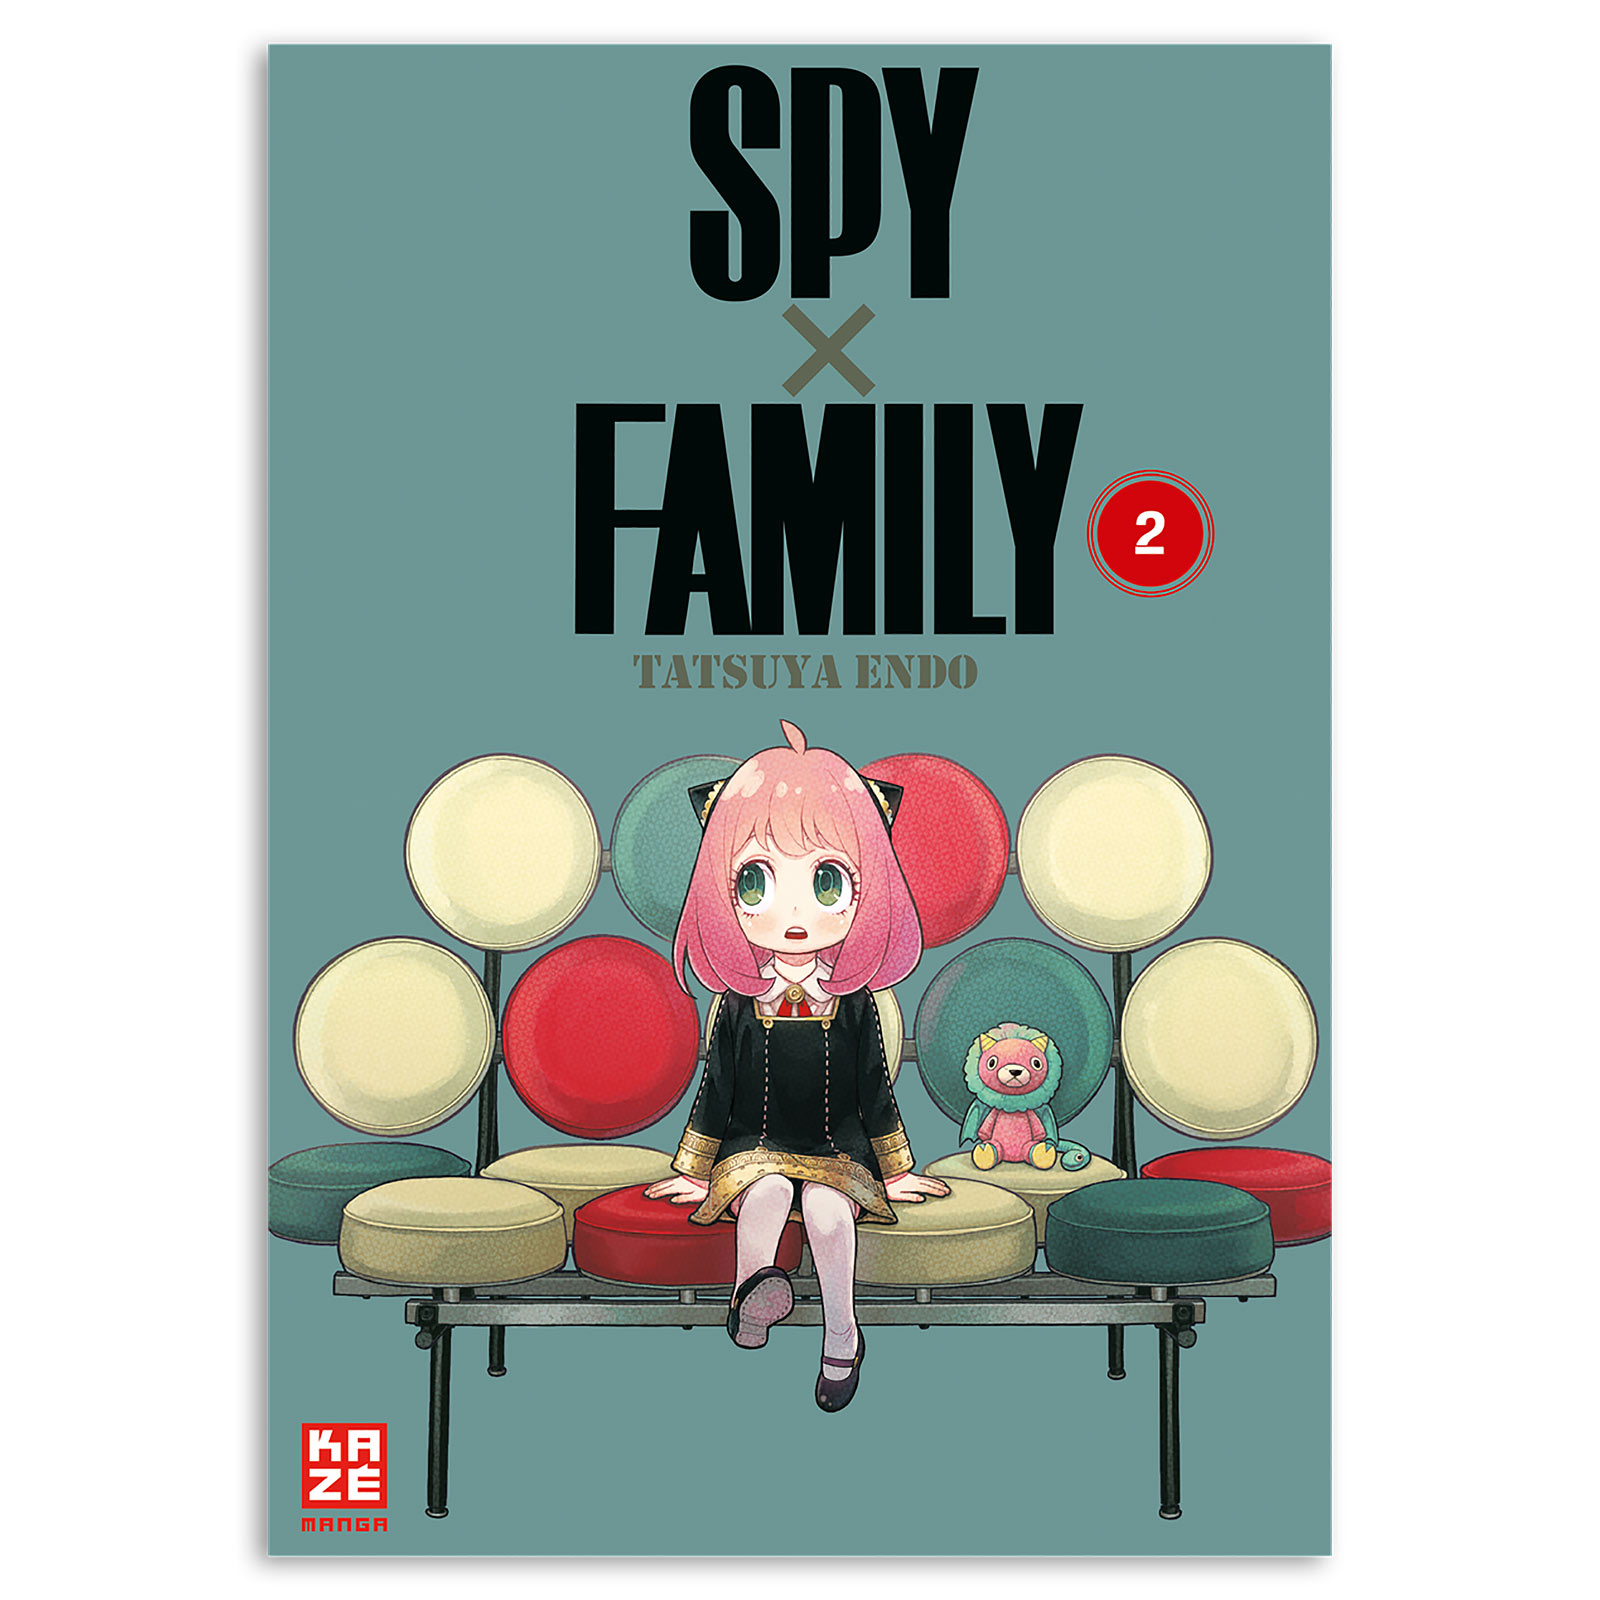 Spy x Family - Tome 2 Broché